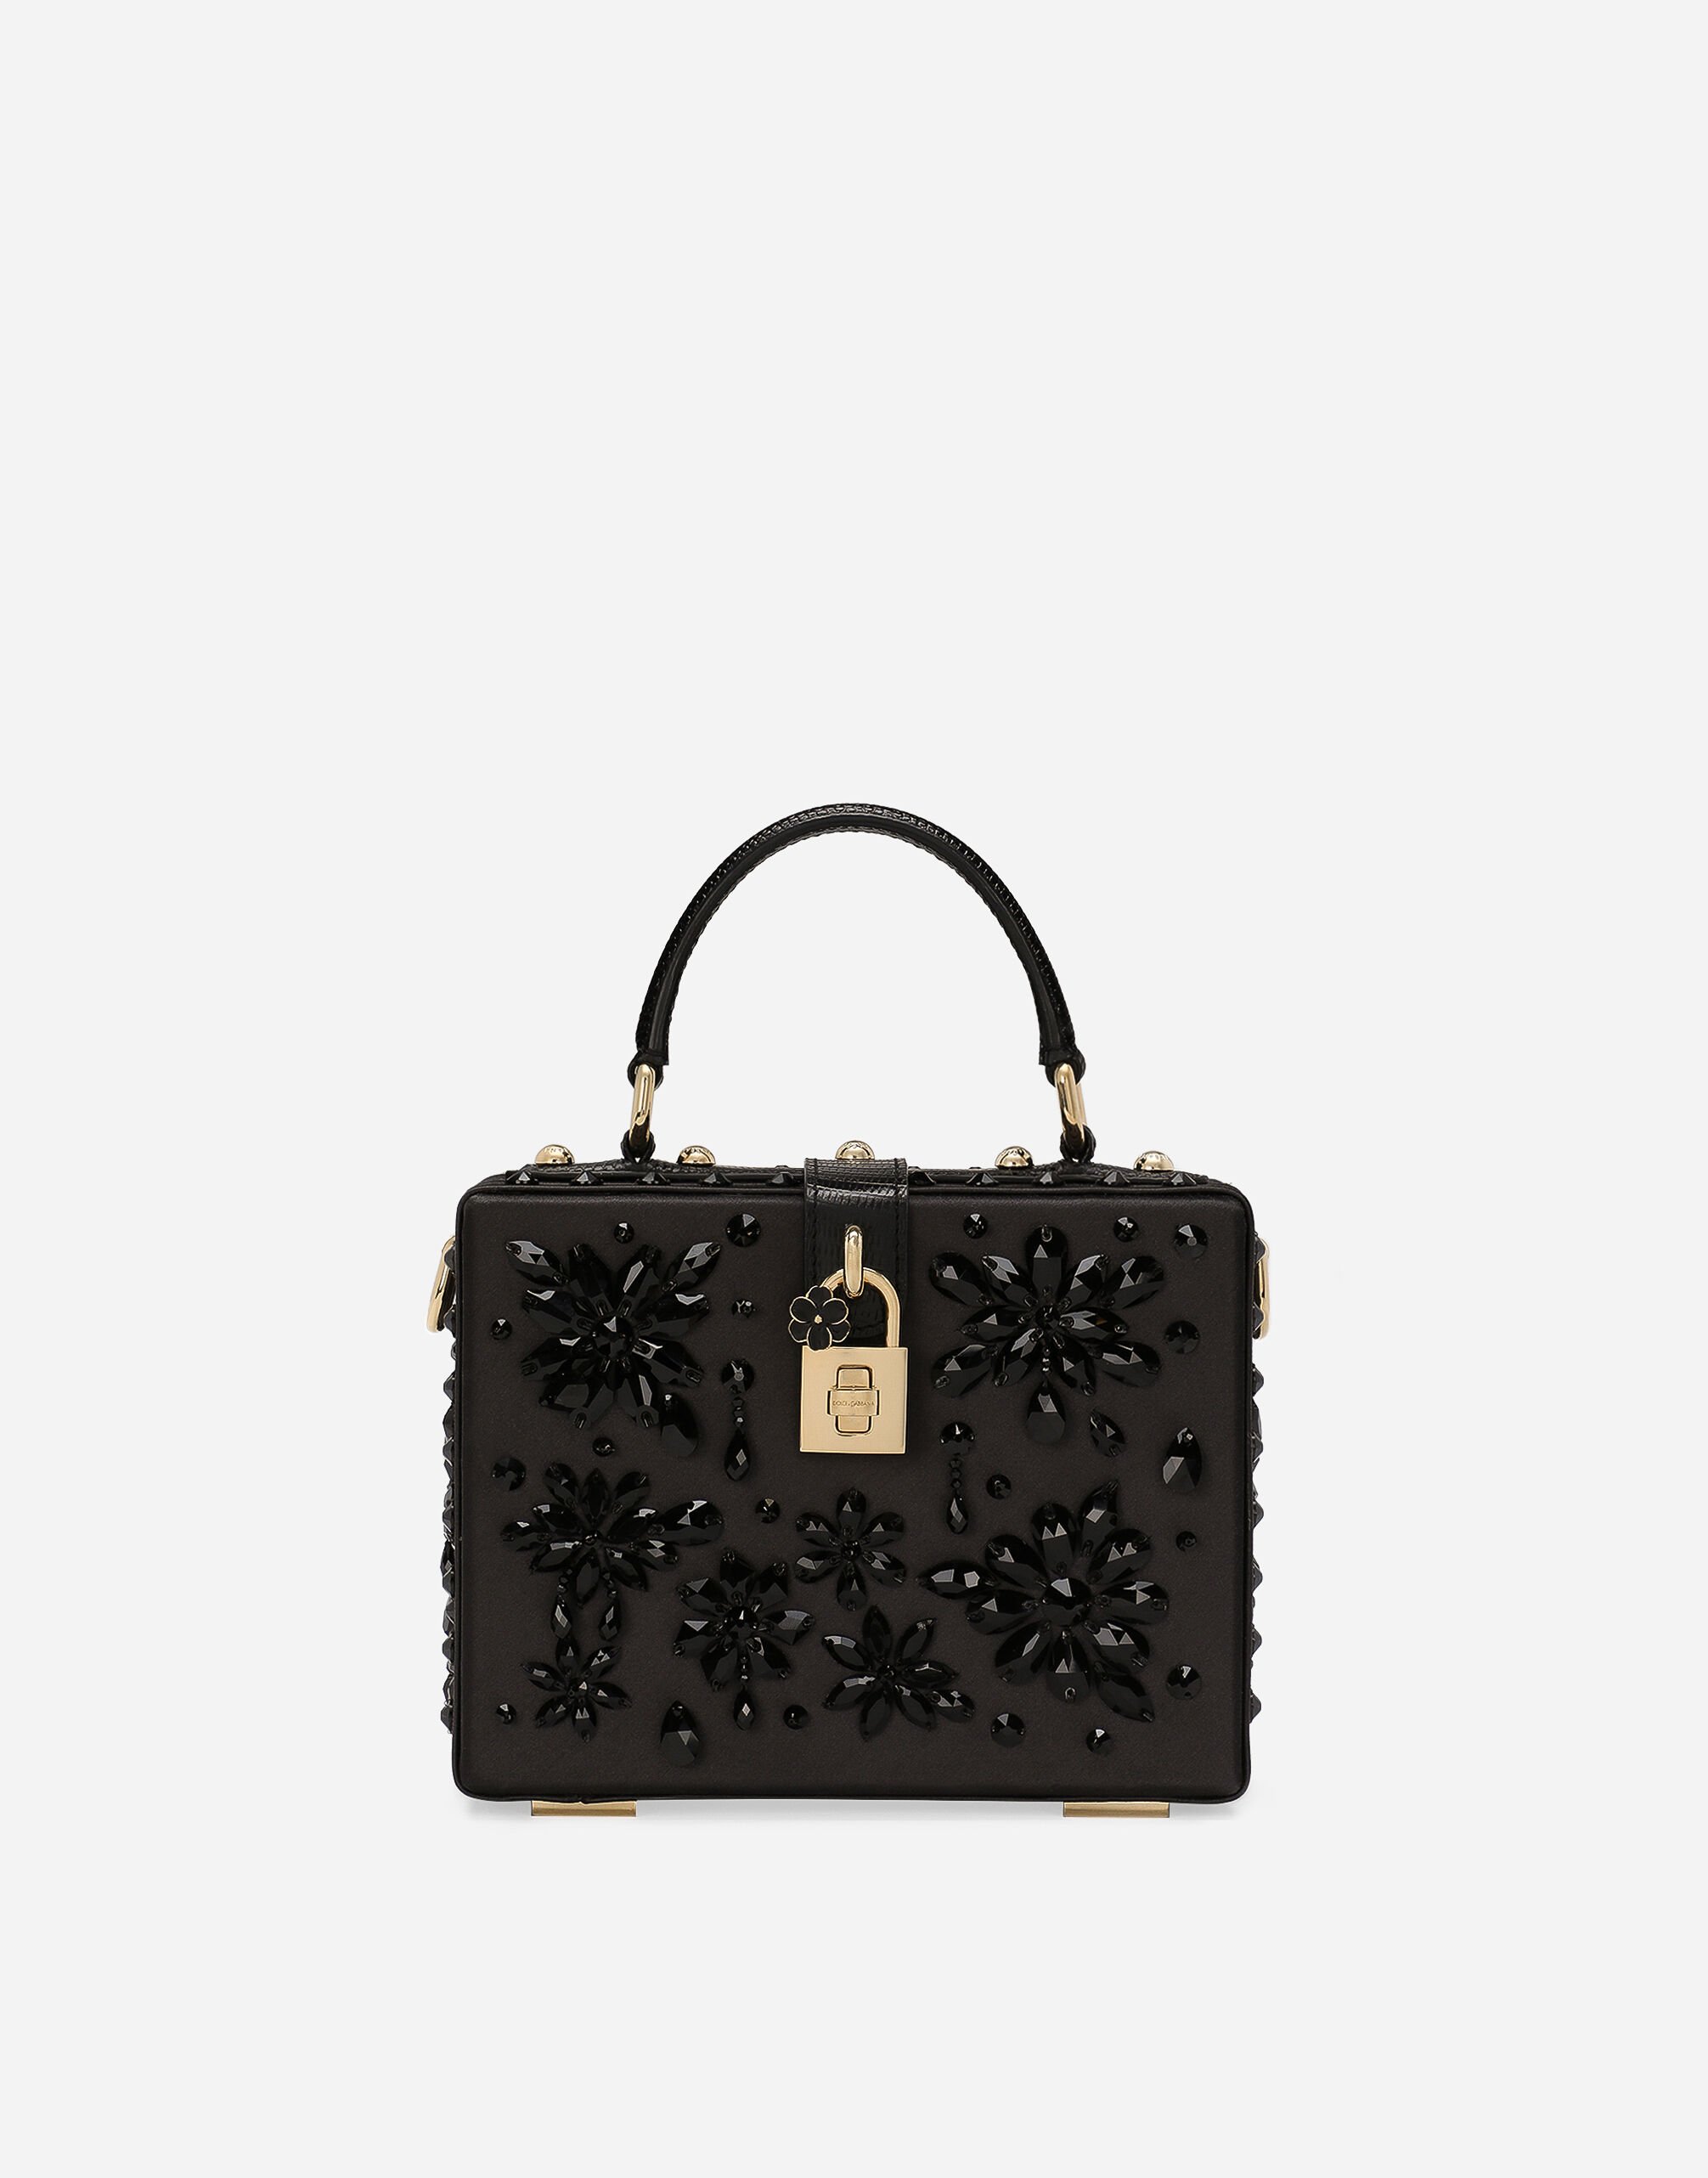 Dolce & Gabbana Dolce Box handbag Gold BB7287AY828